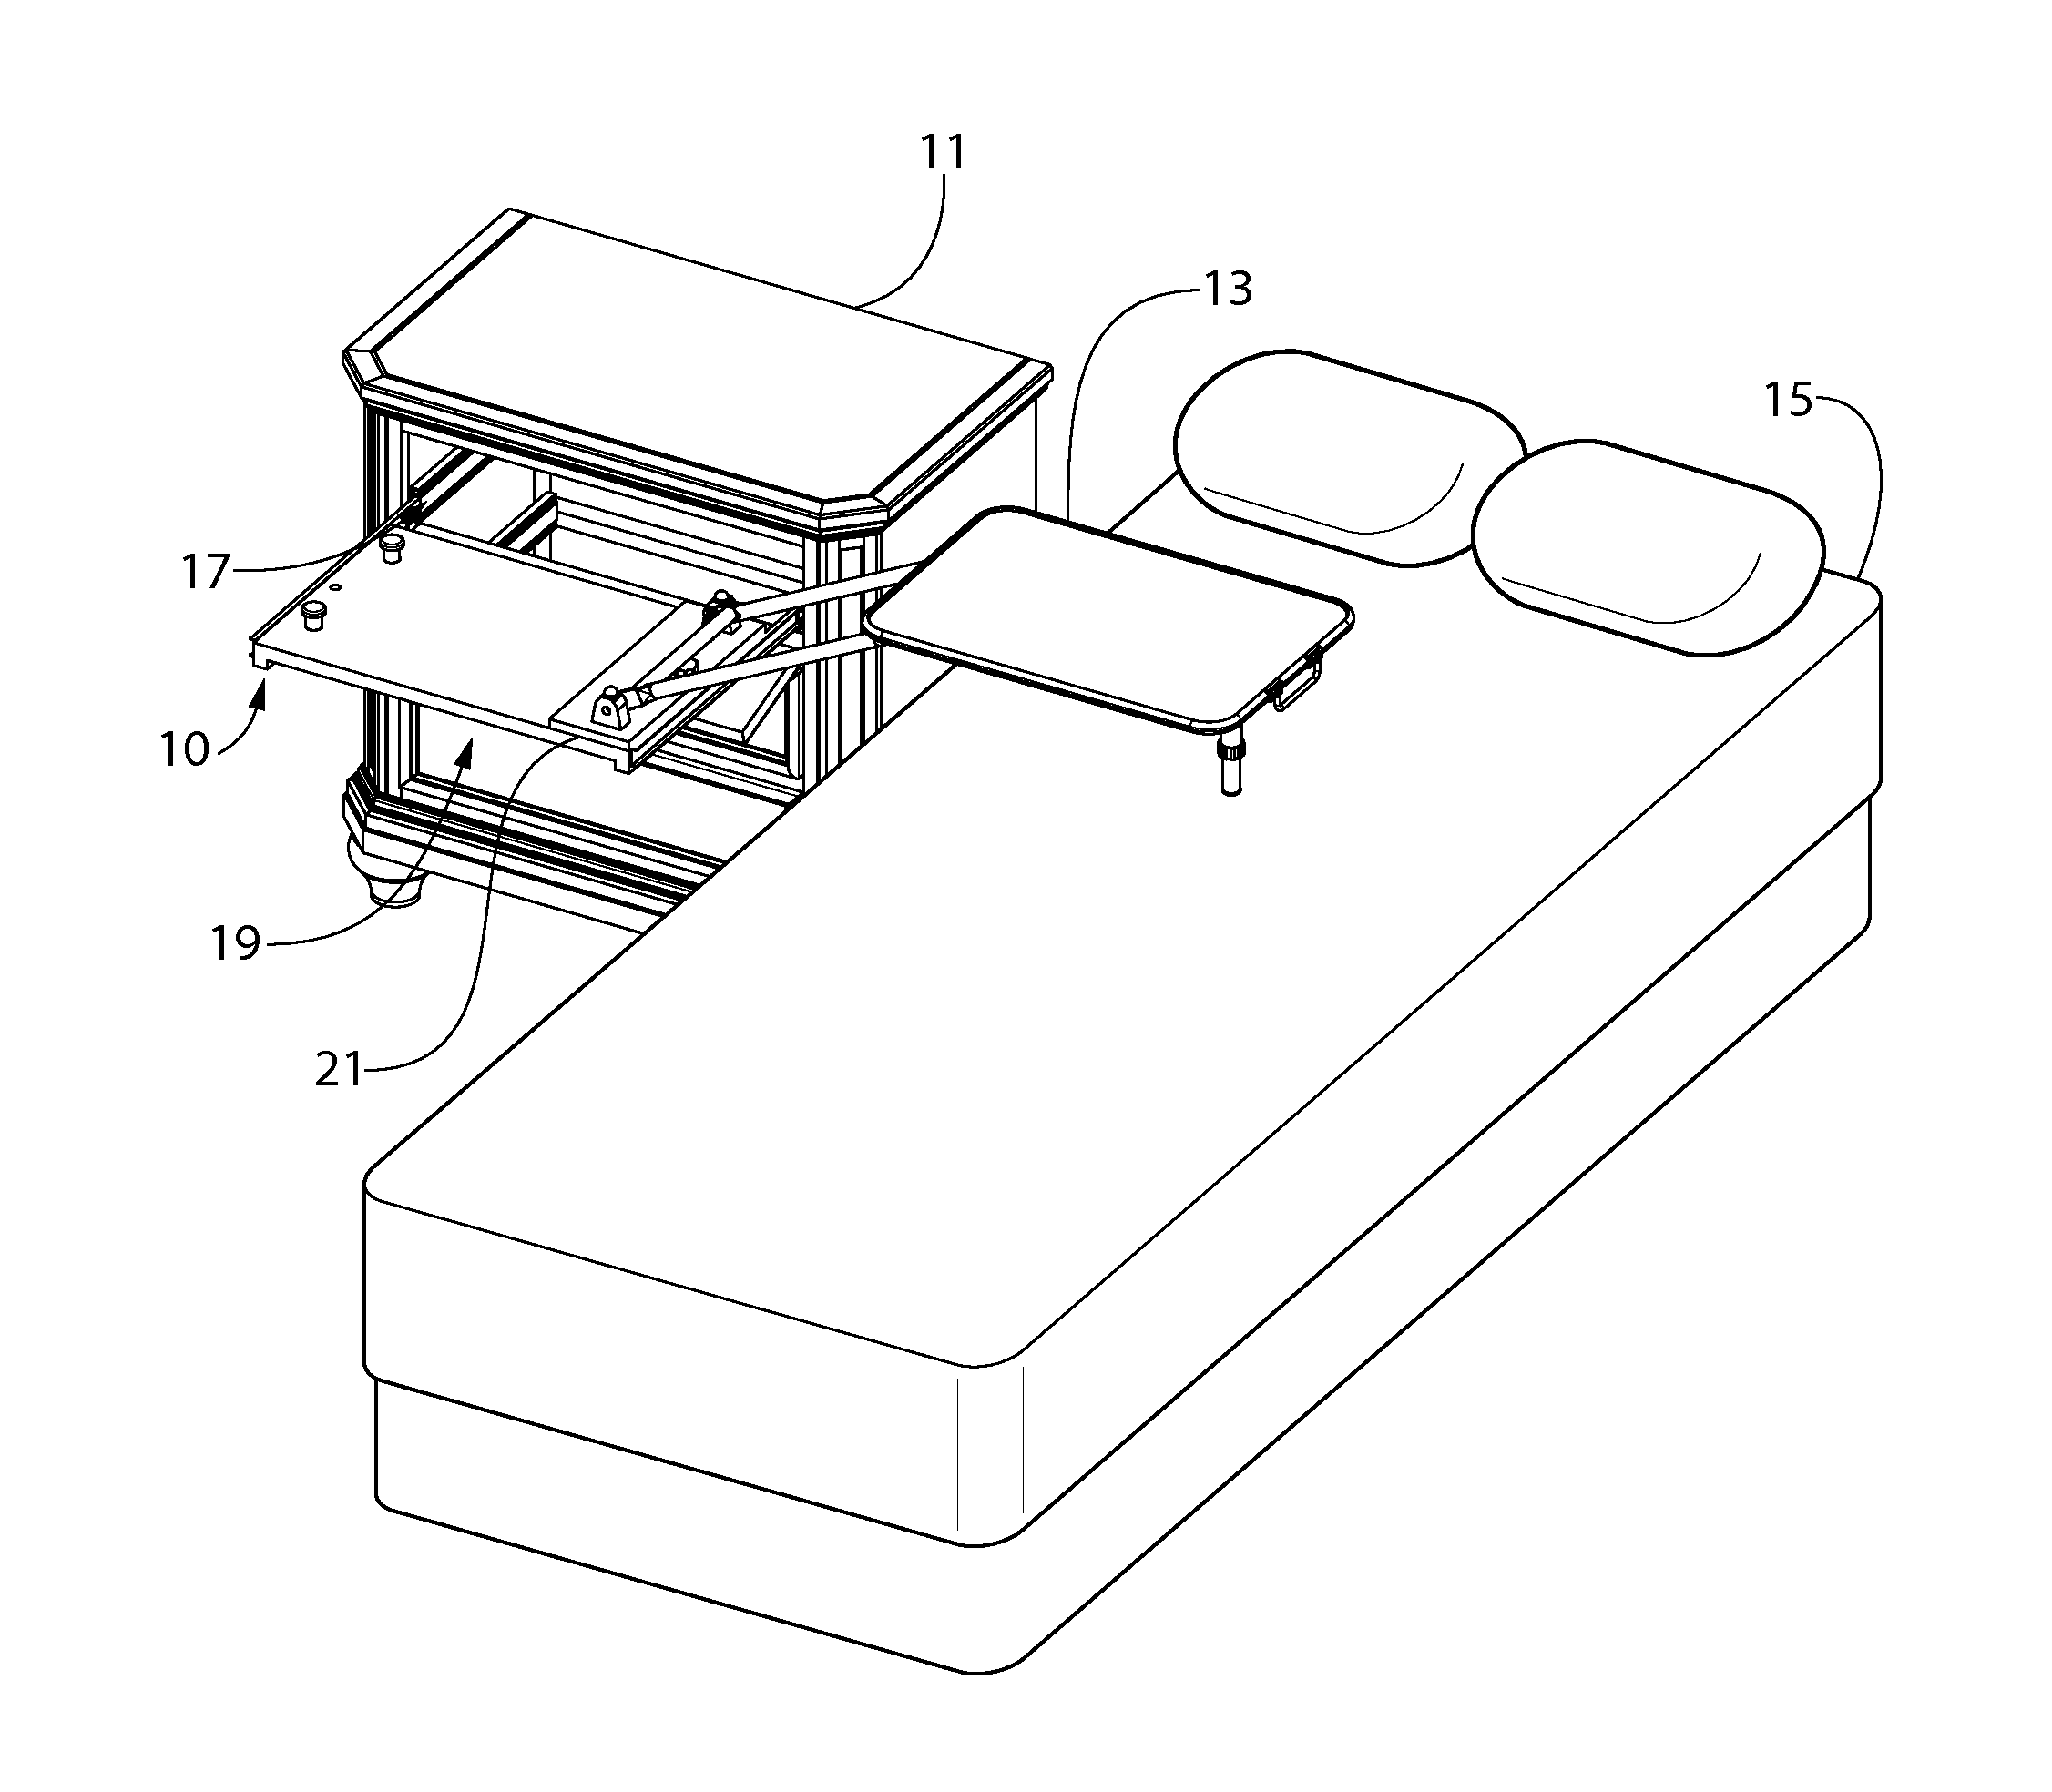 Tray table apparatus